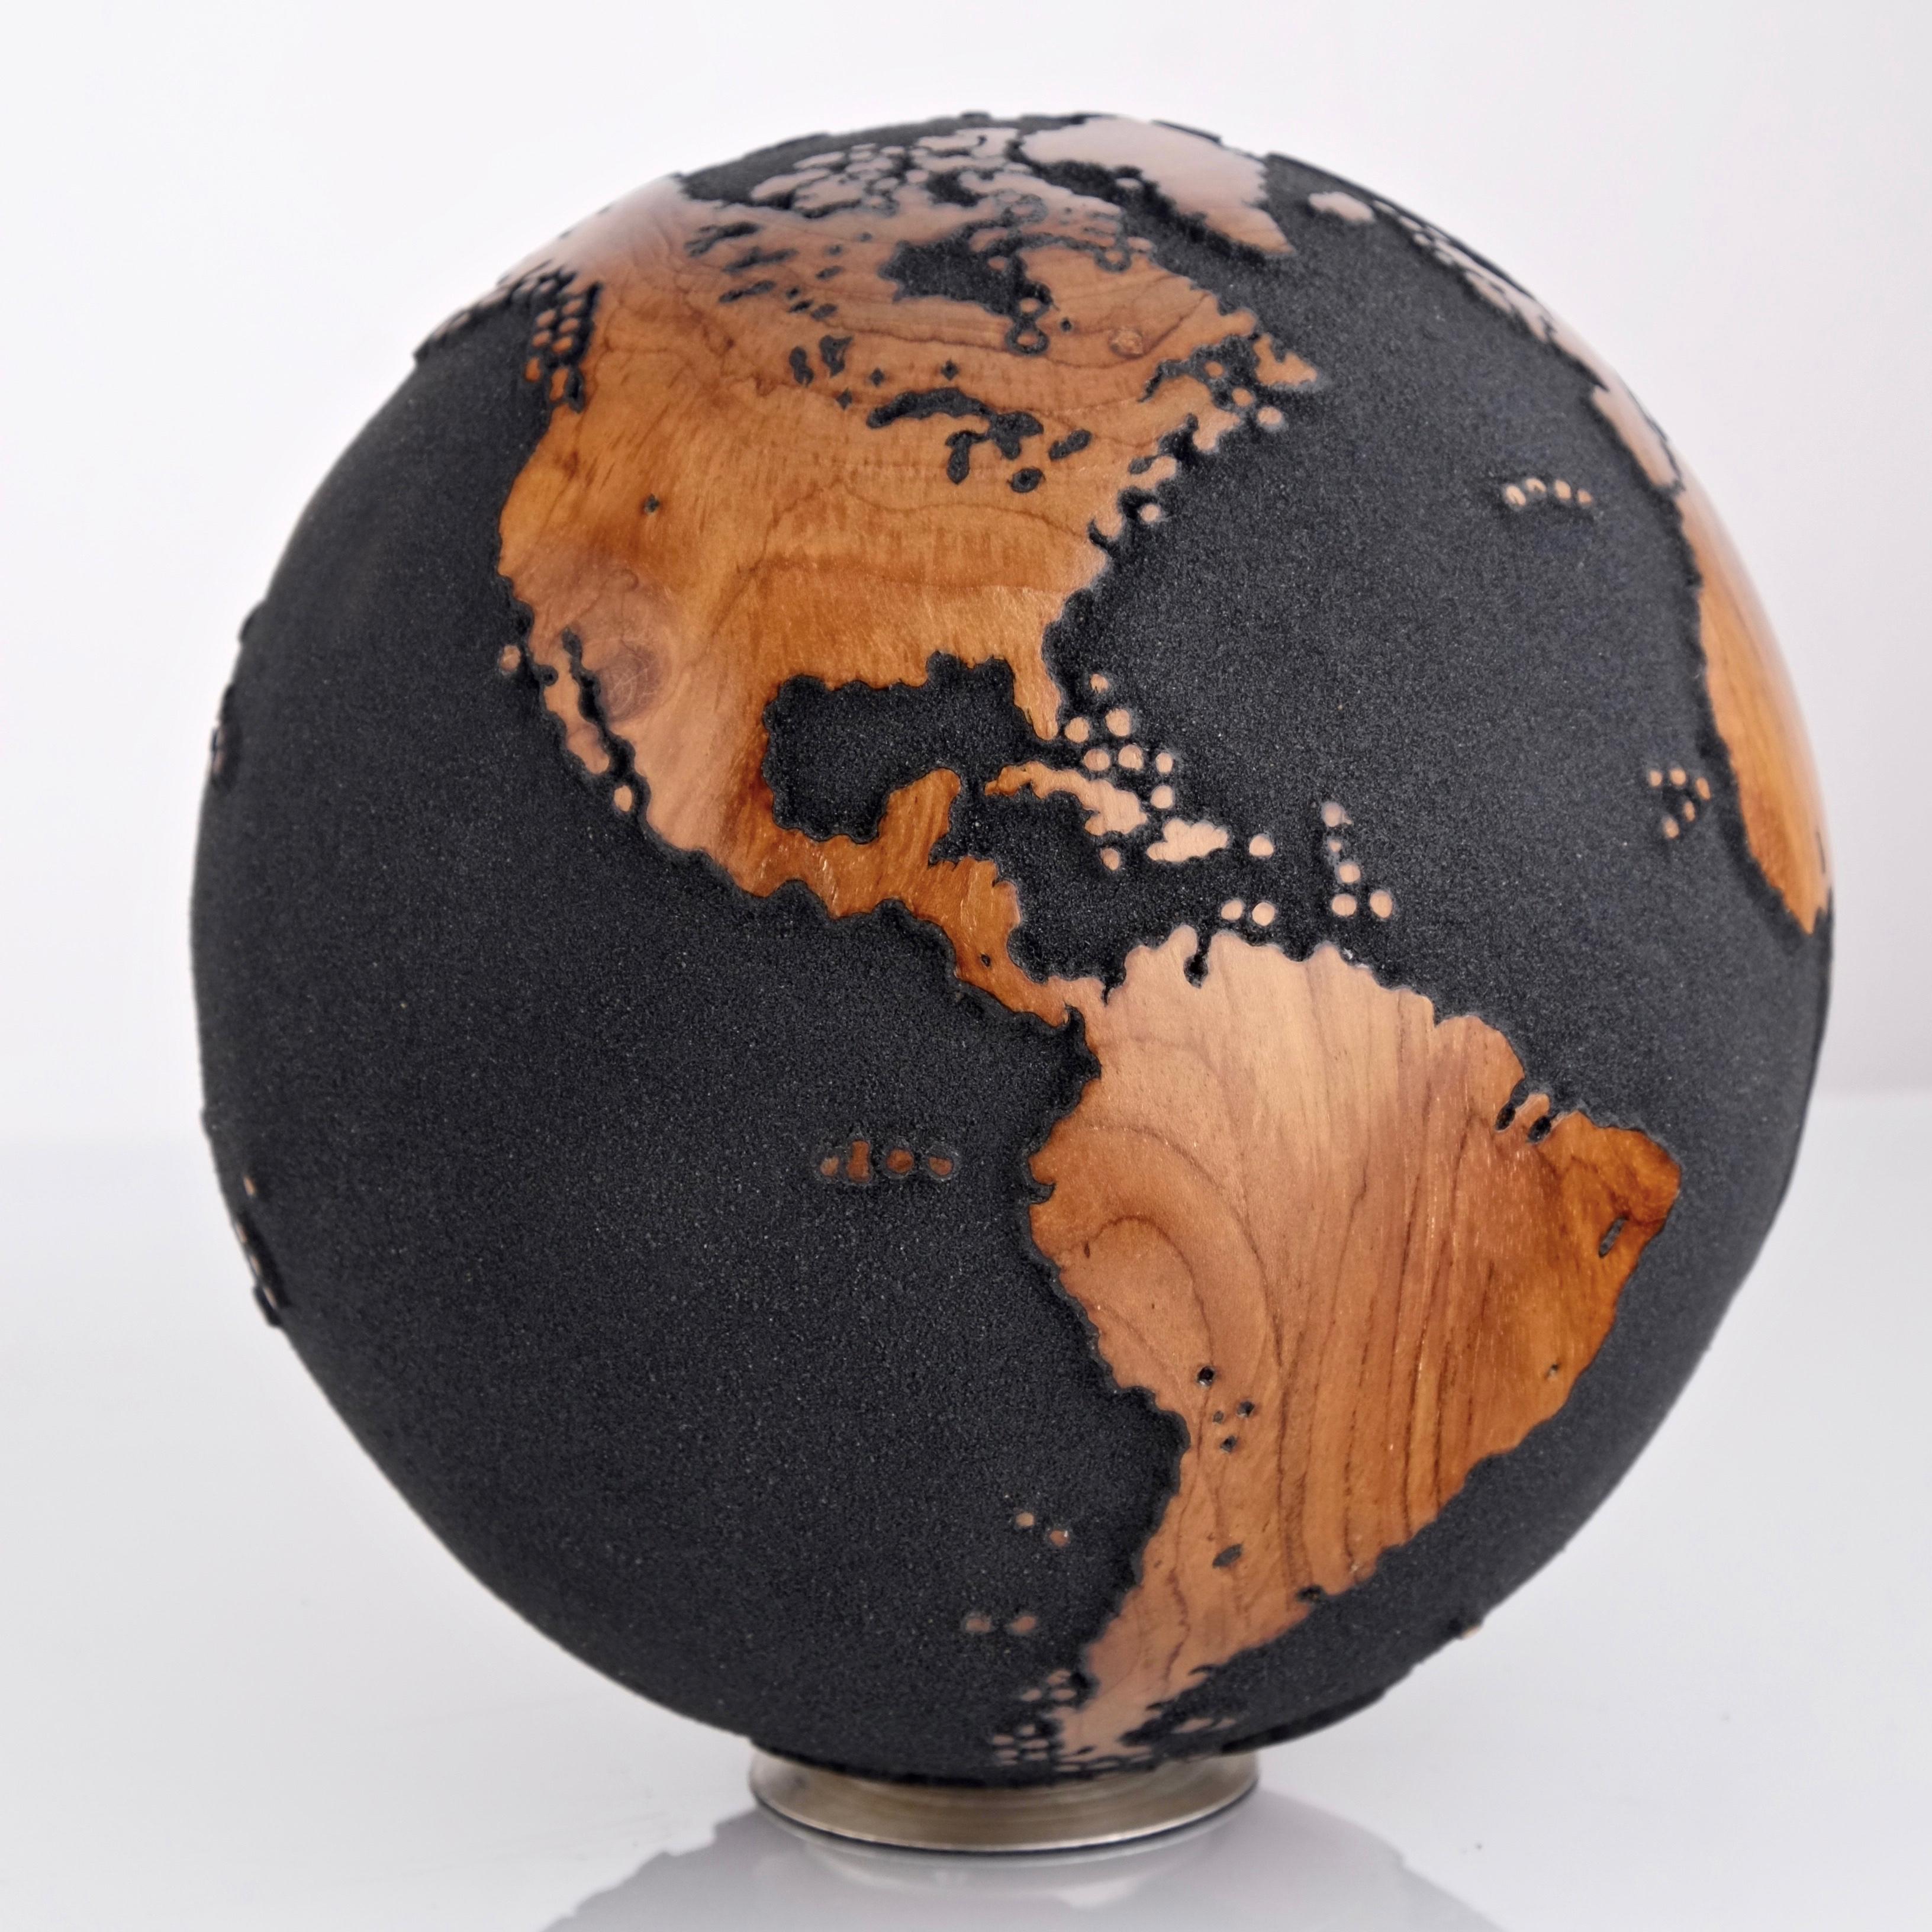 Le bois de teck et le sable de lave noir font de ce magnifique globe tournant une véritable sculpture.
Réalisée à partir d'un morceau de bois entier, la sculpture est façonnée en fonction de la croissance de l'arbre.
Posée sur un socle tournant, la